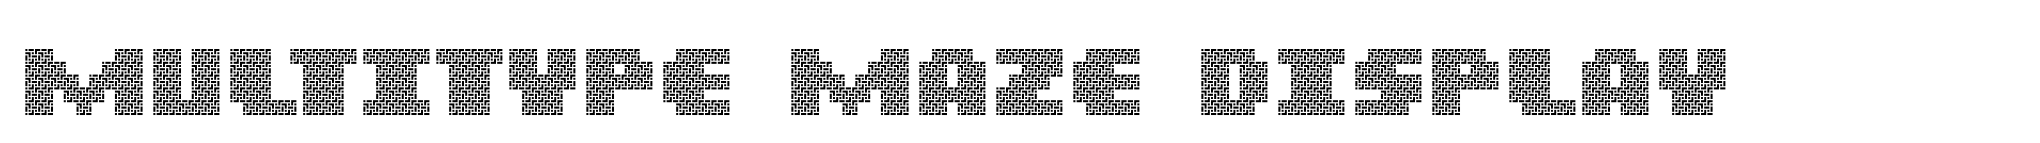 MultiType Maze Display image